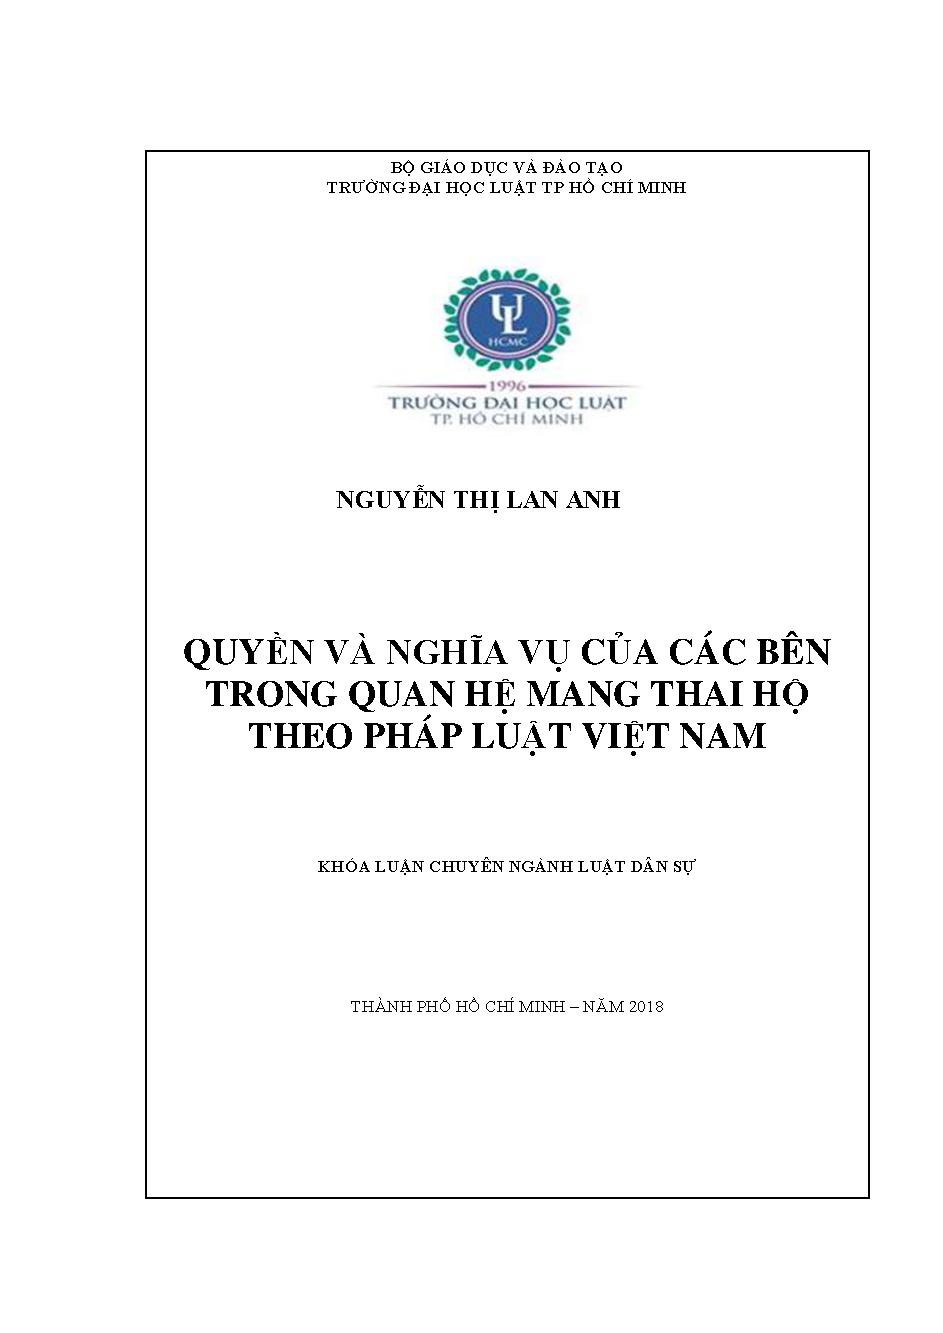 Quyền và nghĩa vụ của các bên trong quan hệ mang thai hộ theo pháp luật Việt Nam